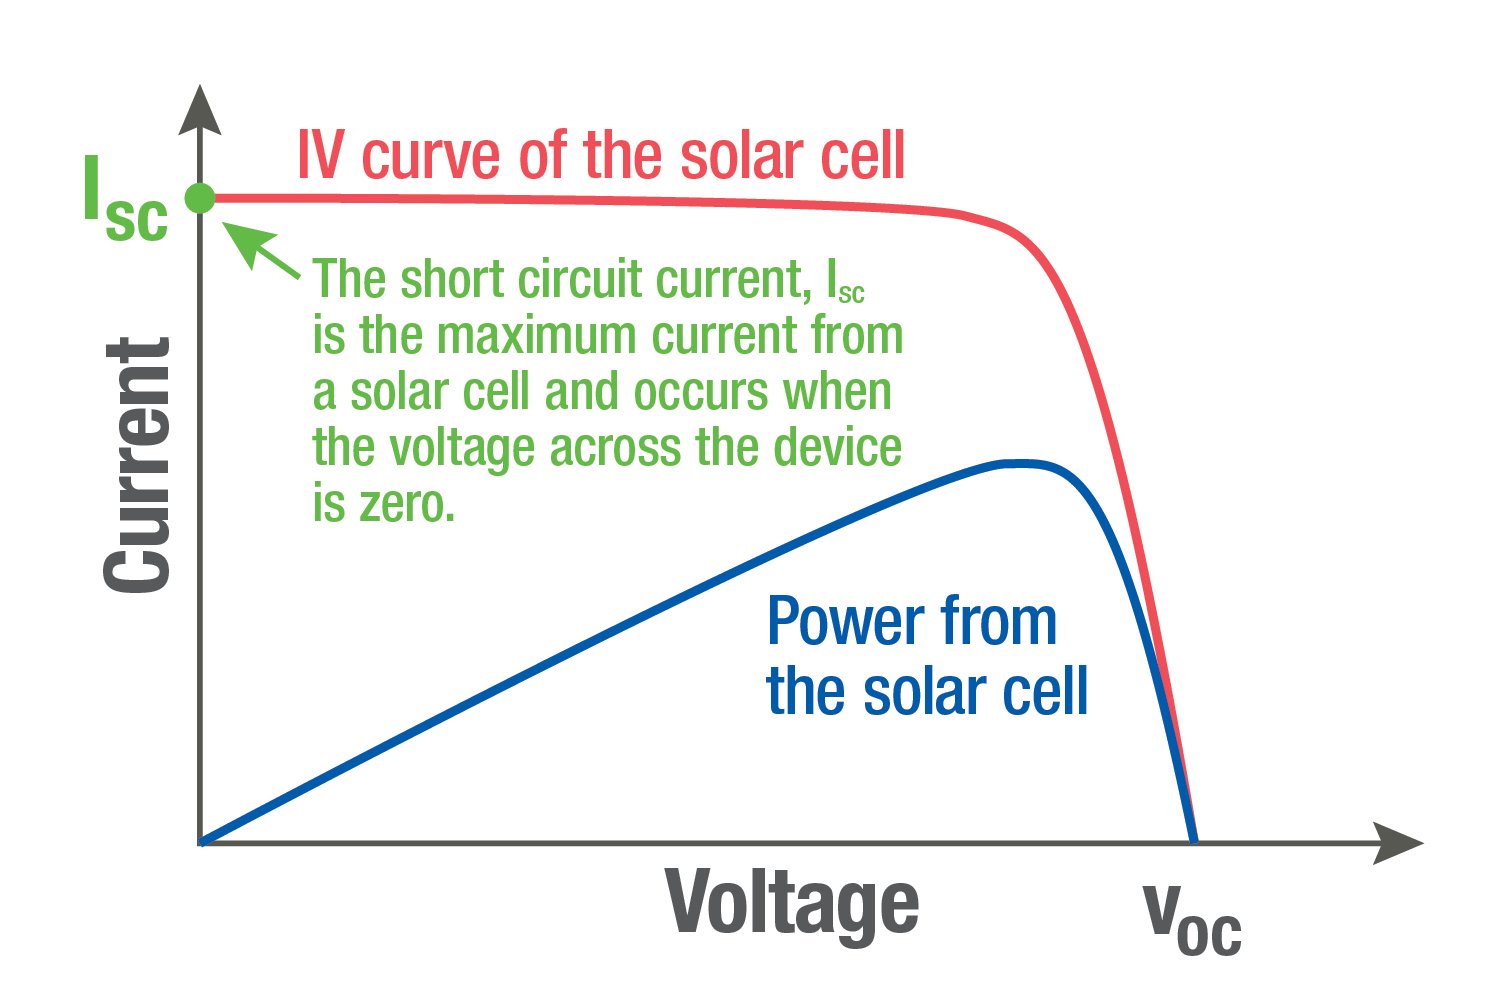 graf som sammenligner IV-kurven til solcellen med effekten fra solcellen